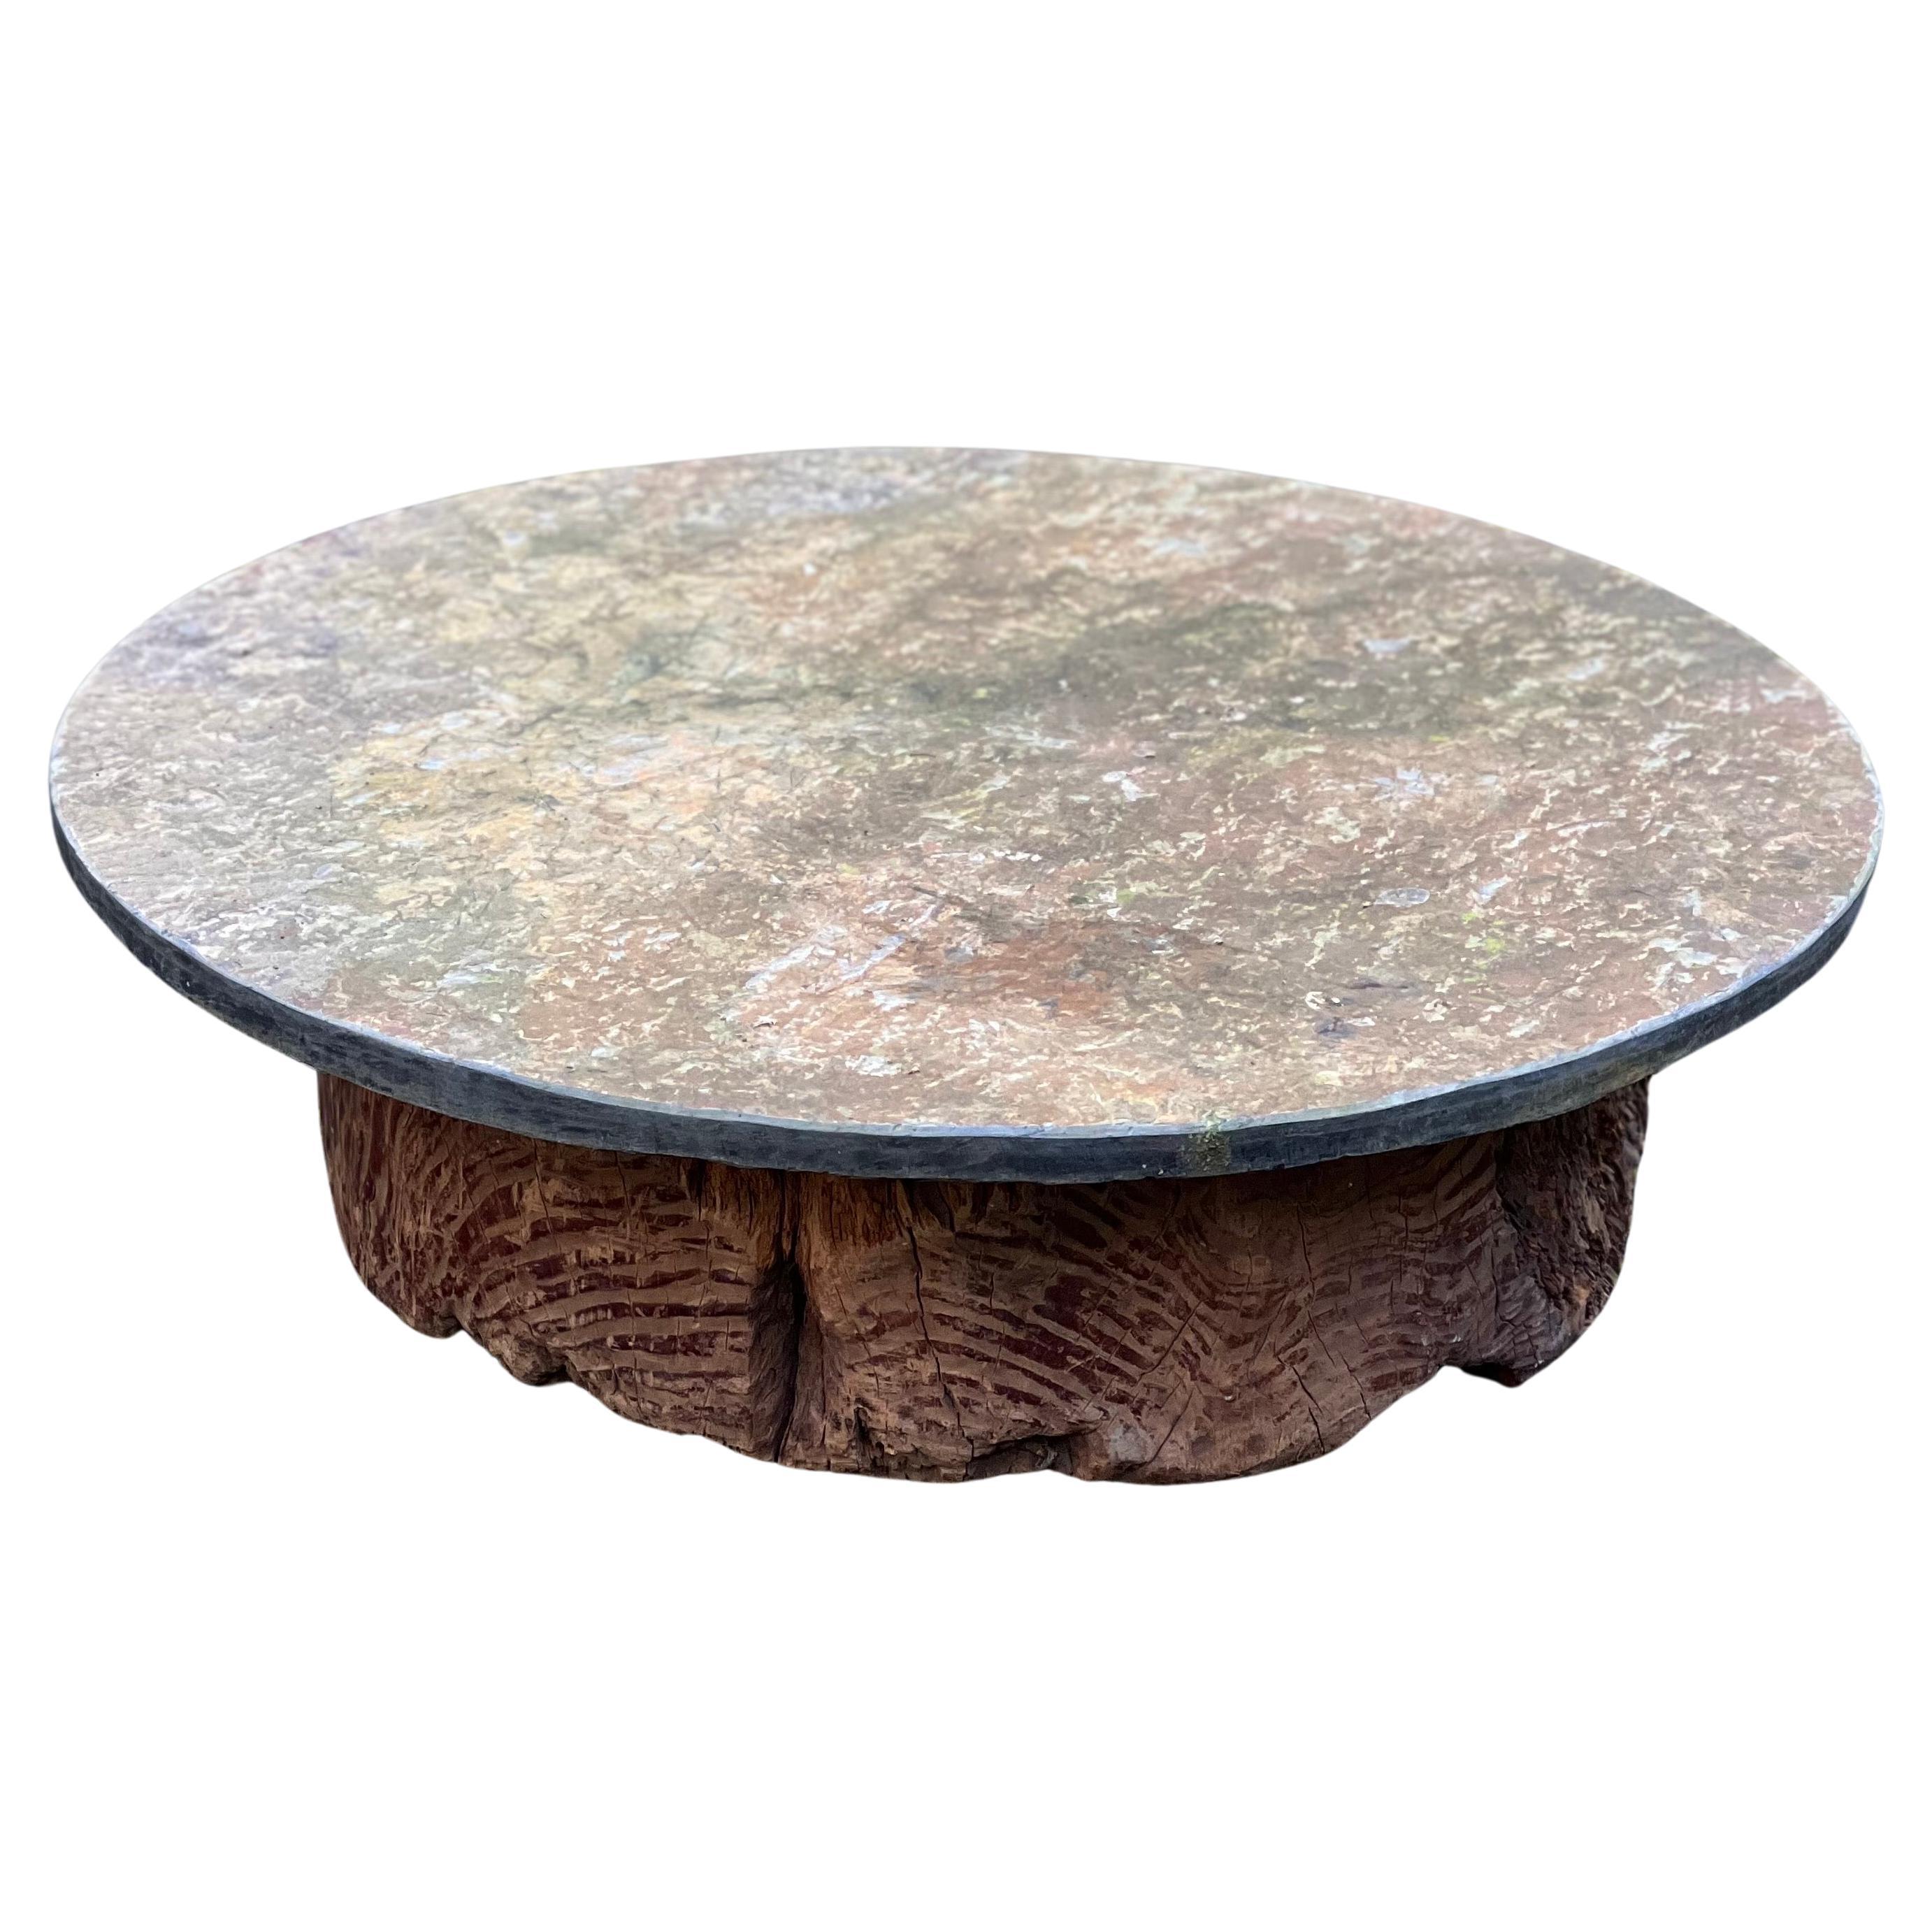 Majestueuse table basse Schist Fossil Stone, base en bois japonaise ancienne. Une pièce unique.